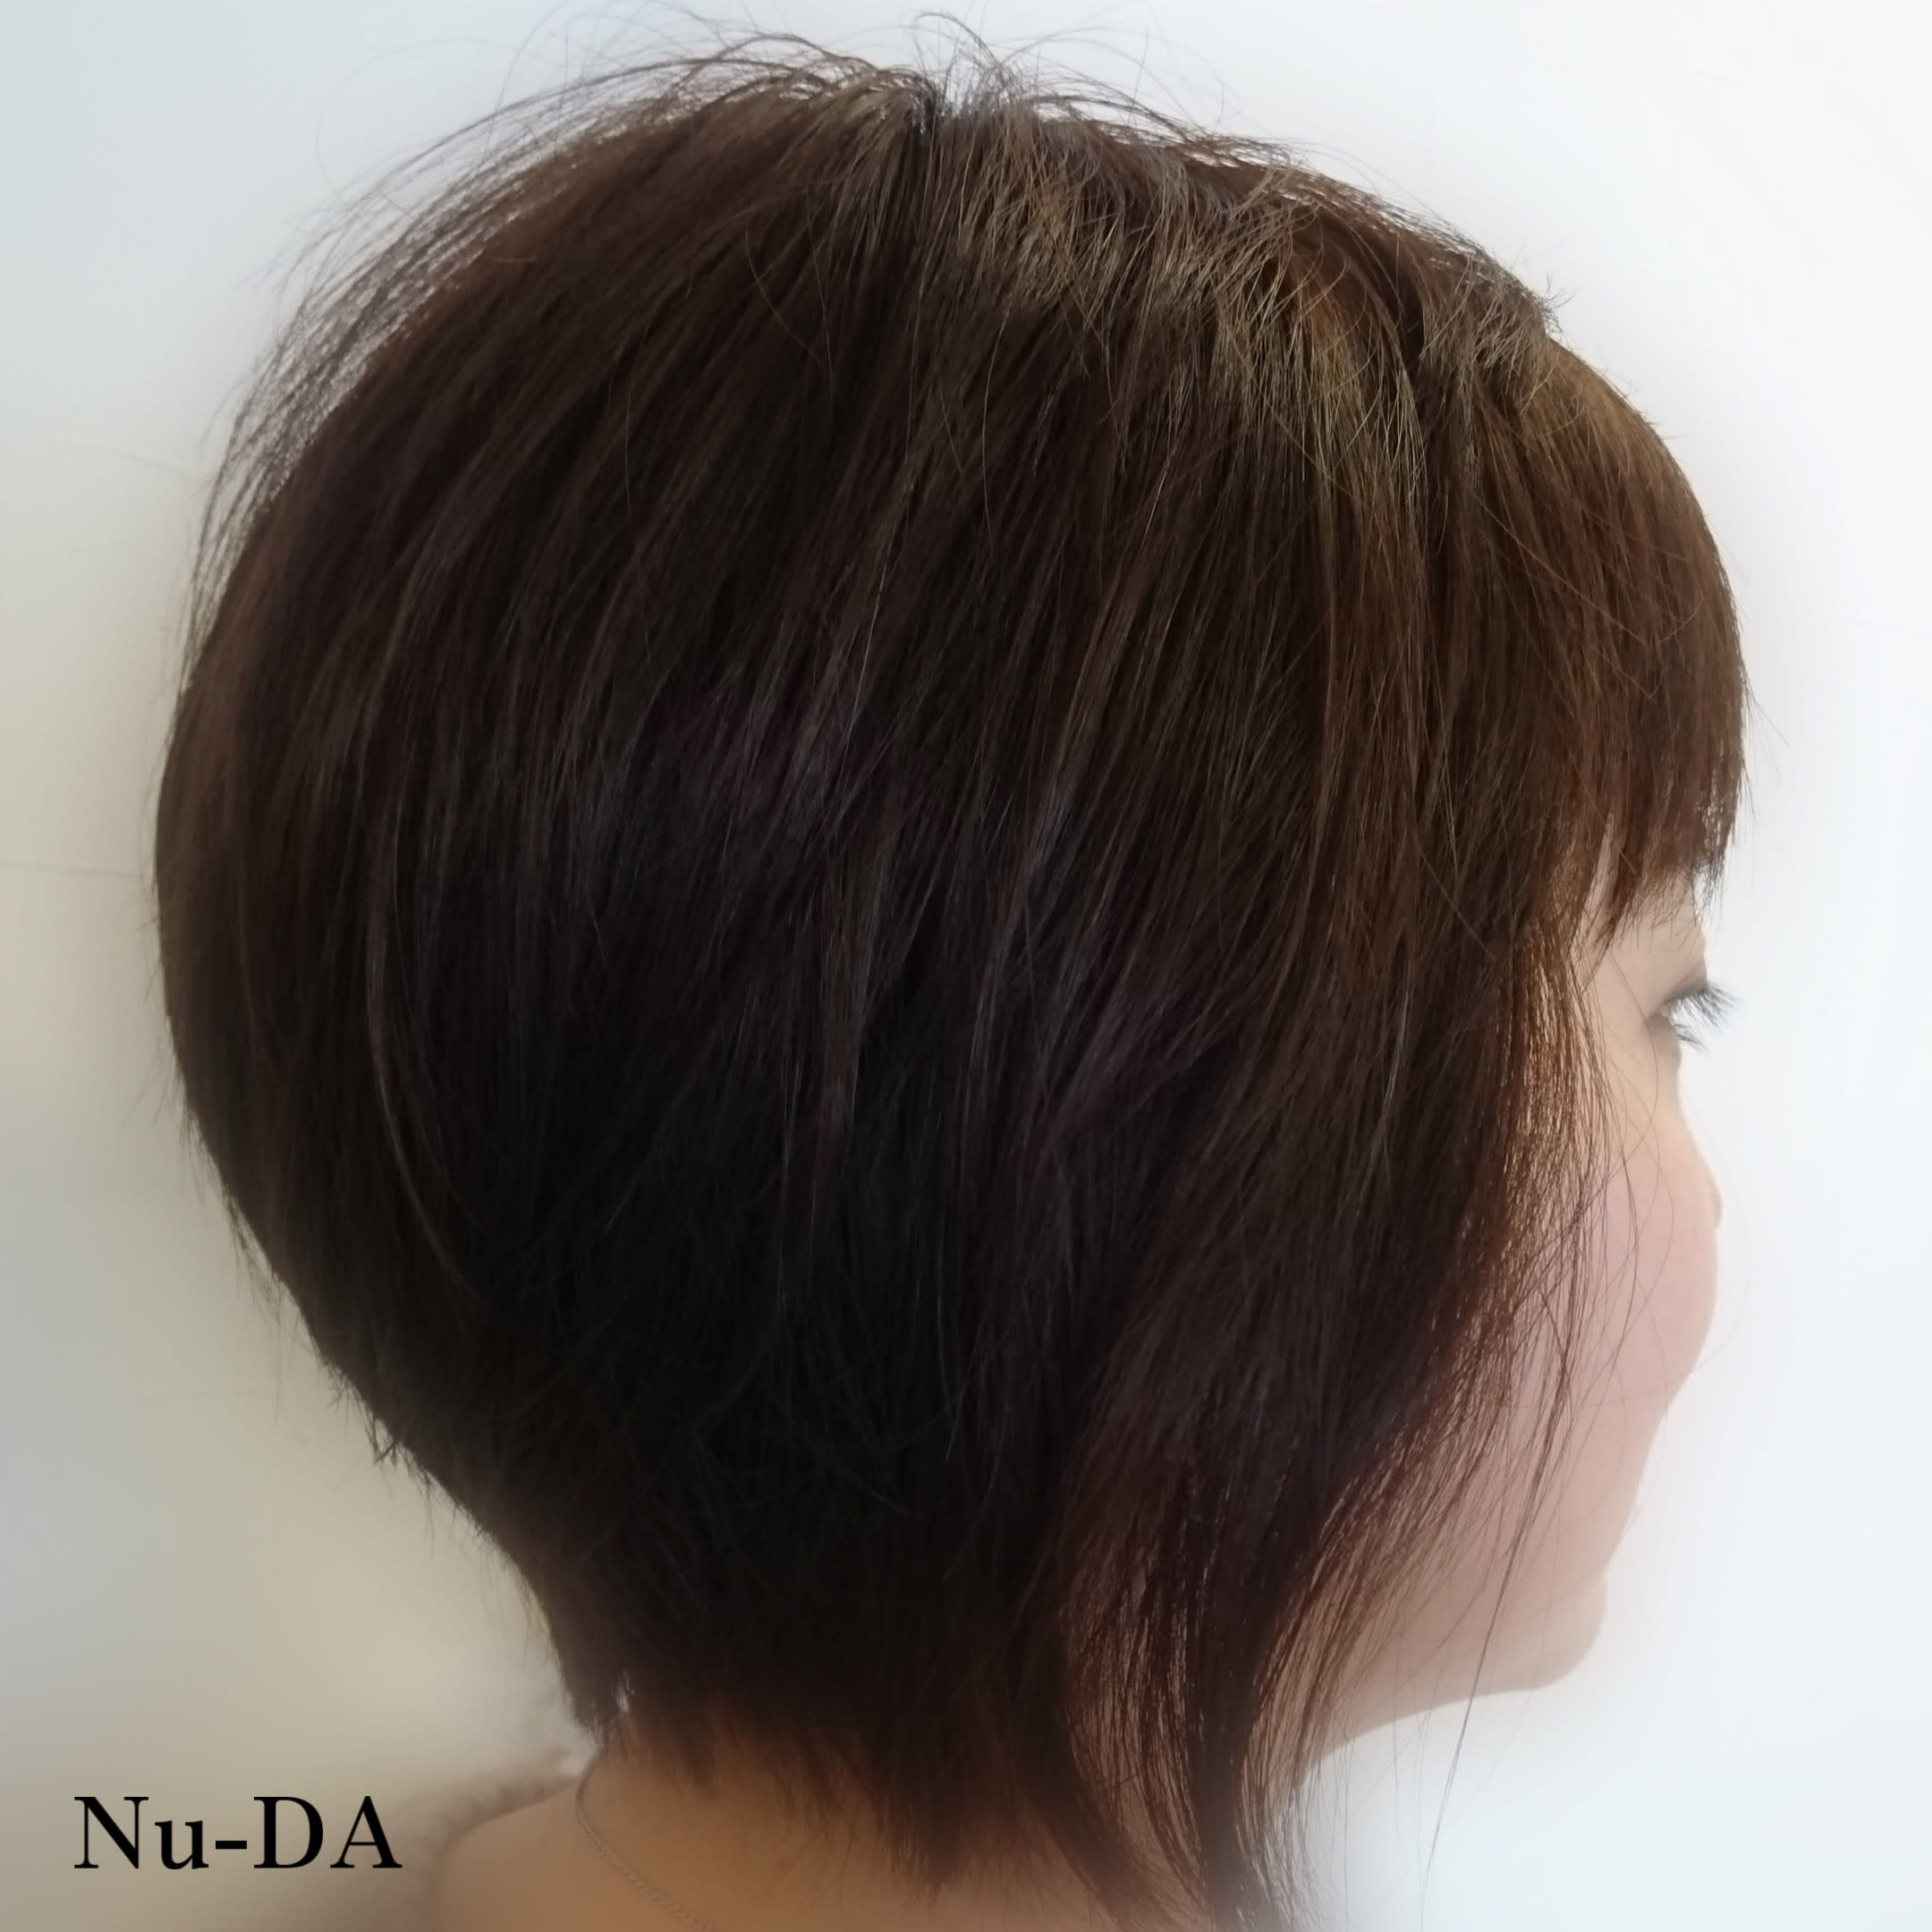 hair Nu-DA【ヘアヌーダ】のスタイル紹介。【Nu-DA】前下がりボブ